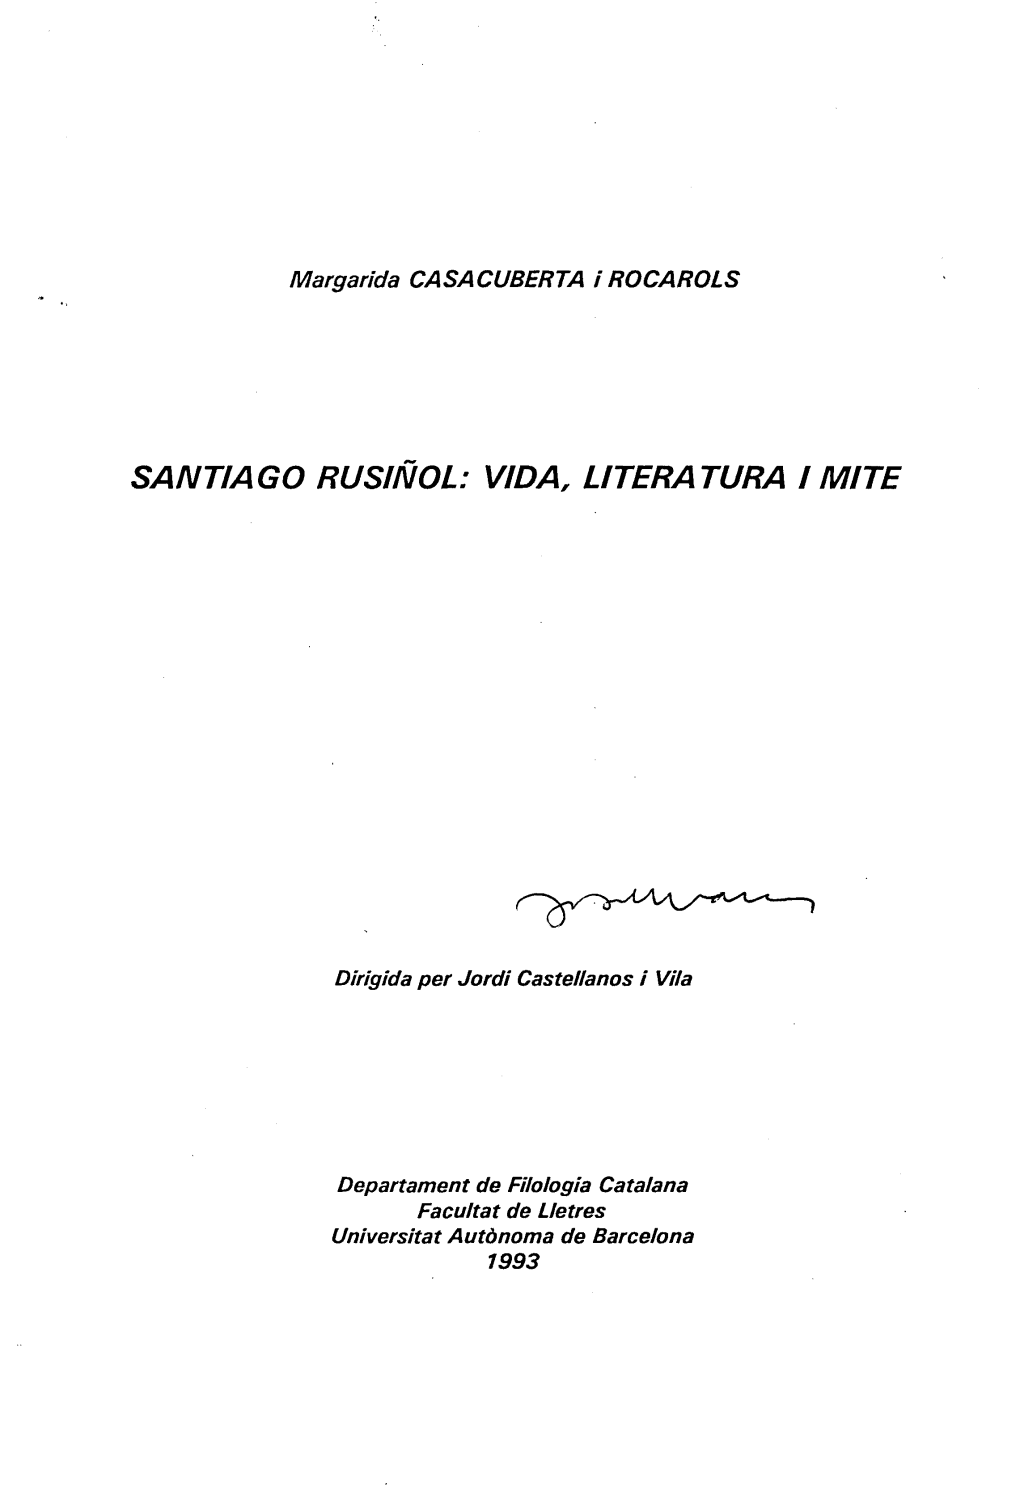 Santiago Rusiñol: Vida, Literatura I Mite